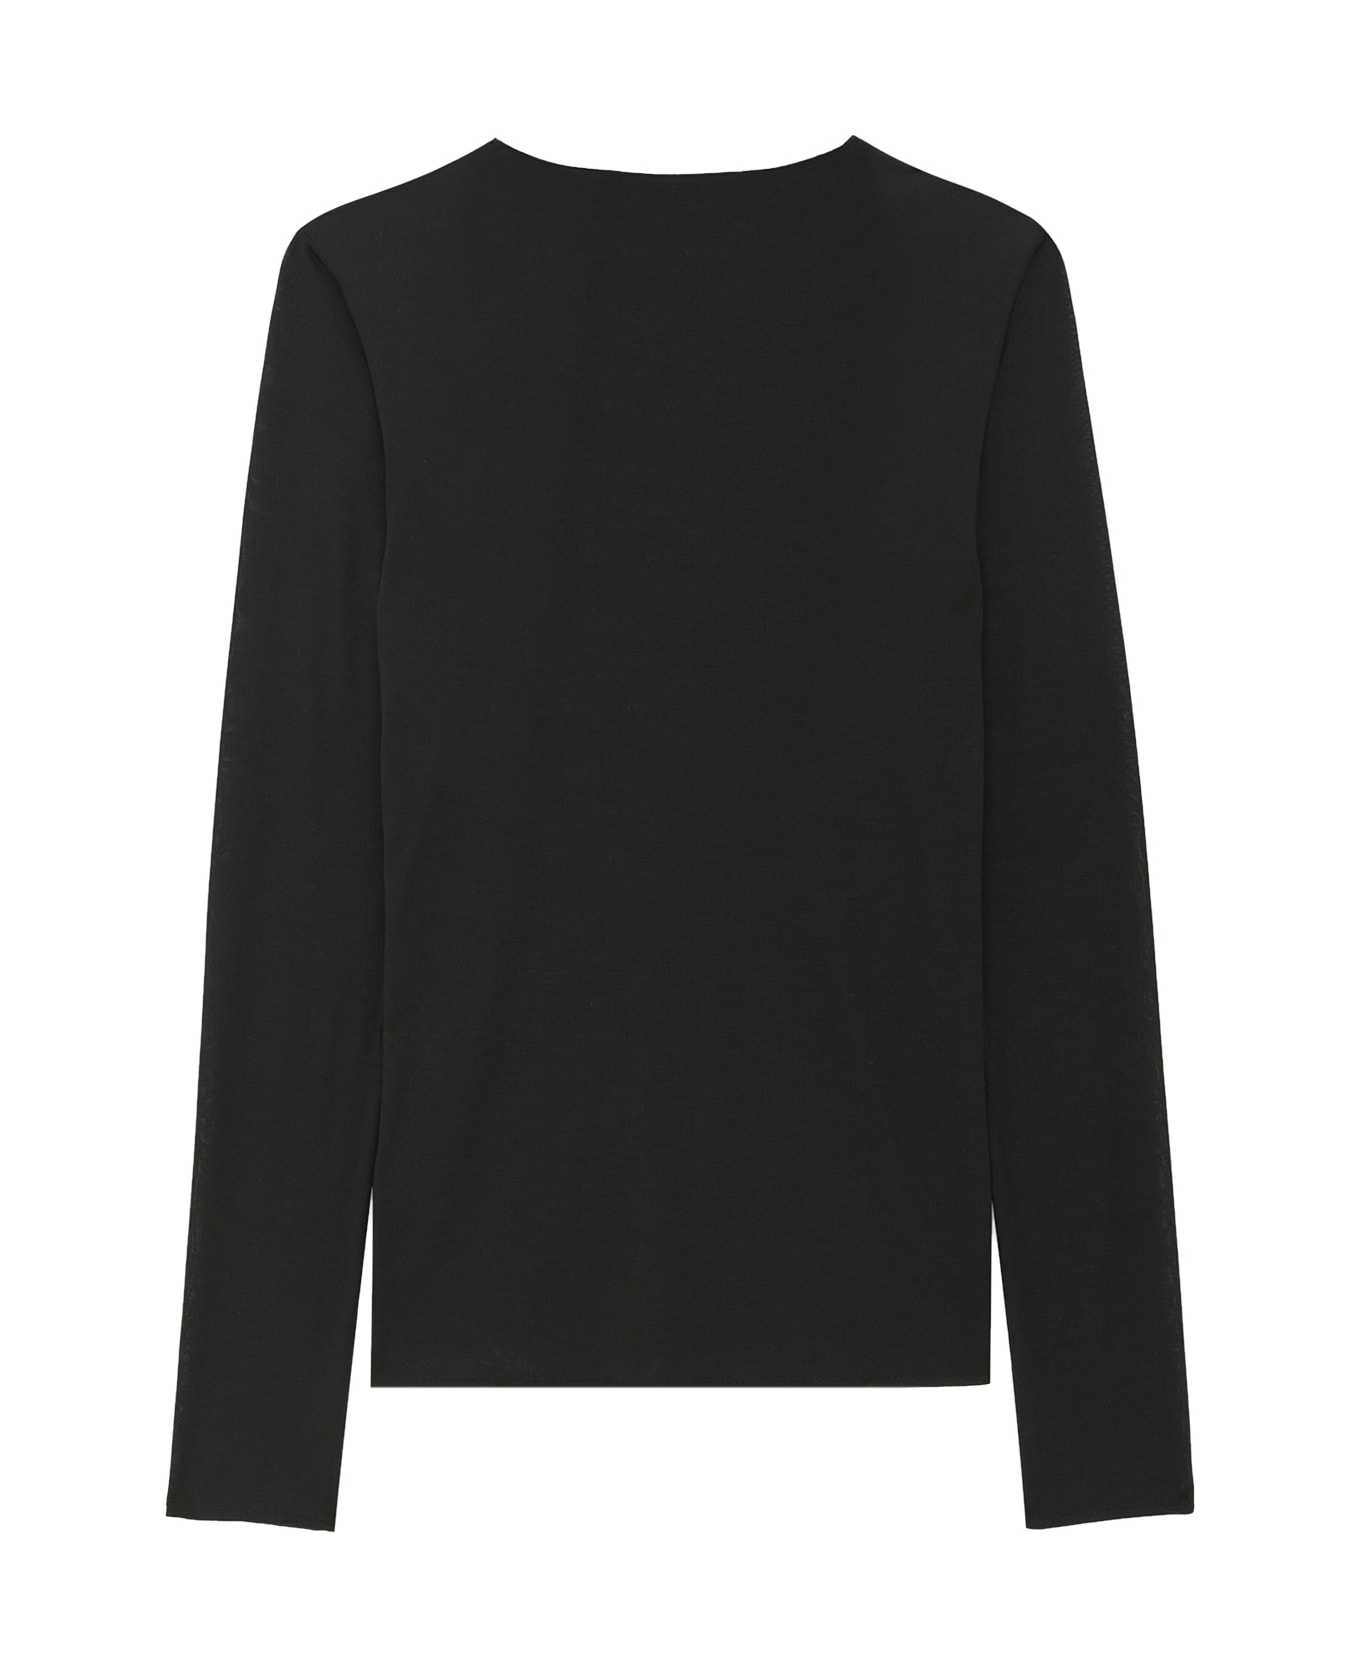 Saint Laurent Sweater - Black ニットウェア